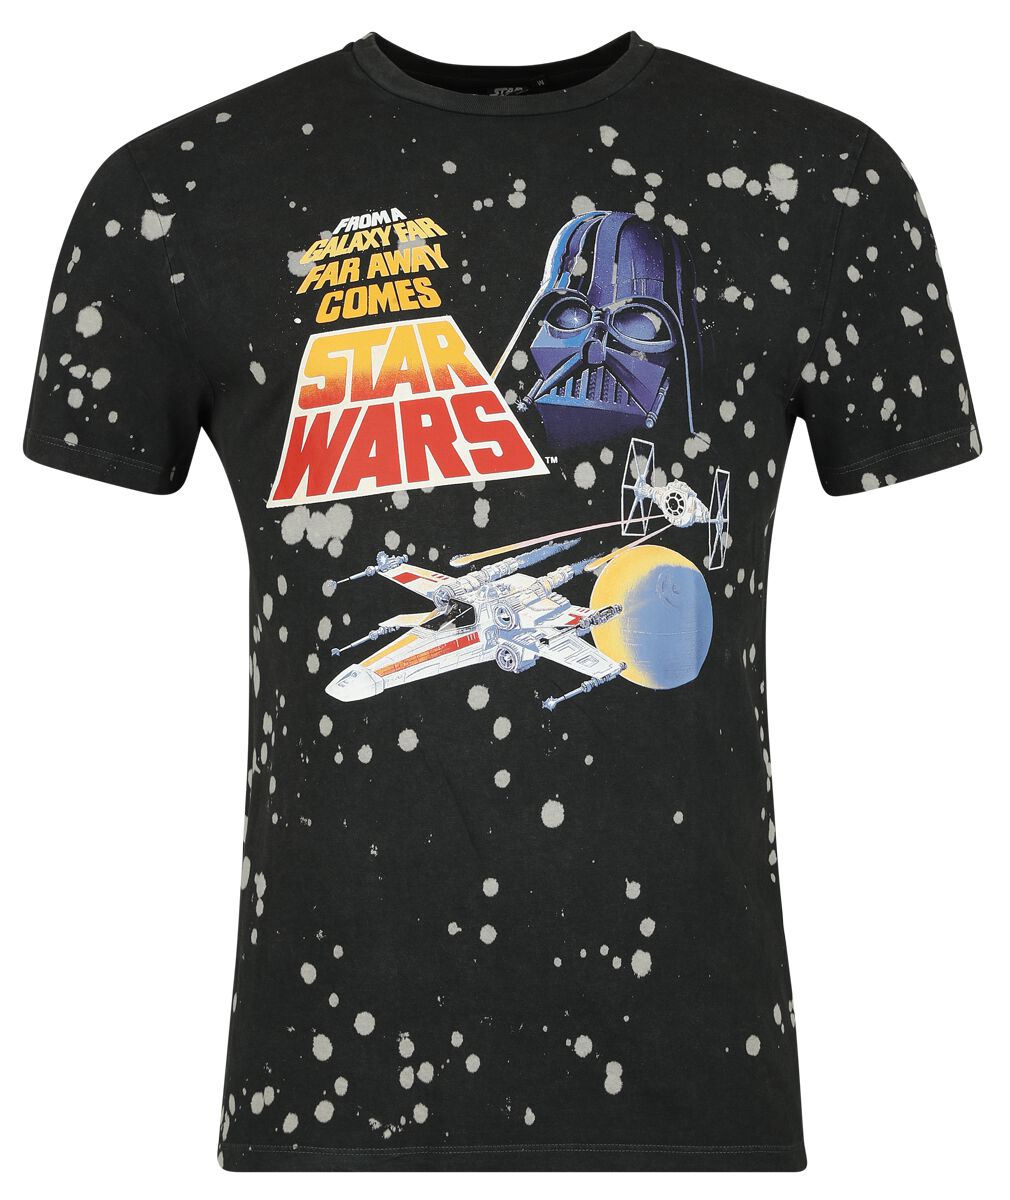 Star Wars T-Shirt - Classic - Space - S bis XXL - für Männer - Größe S - schwarz  - Lizenzierter Fanartikel